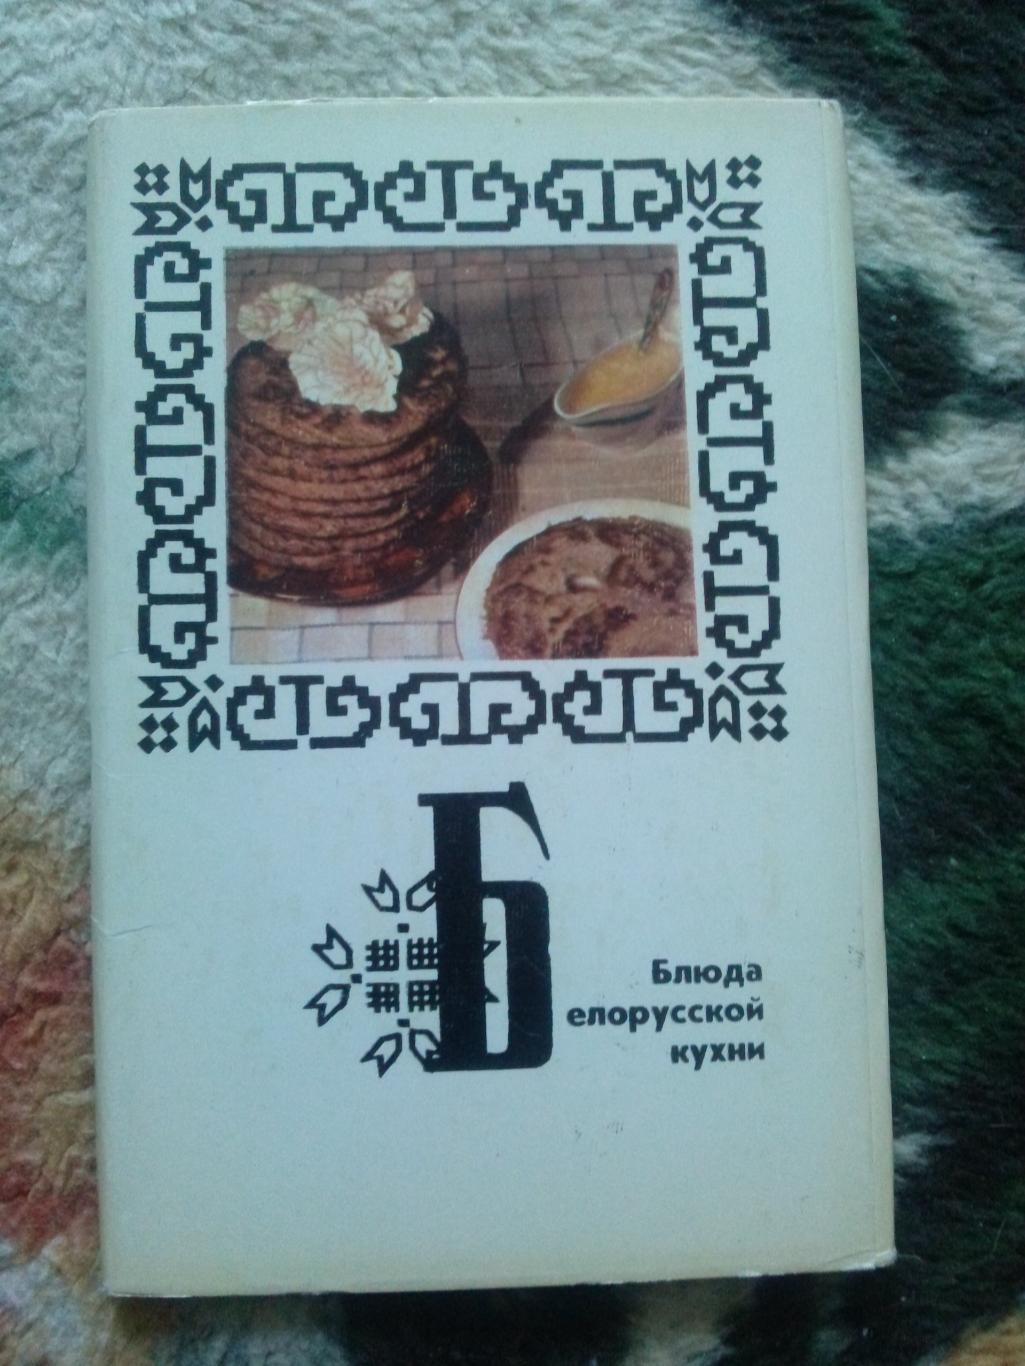 Блюда белорусской кухни 1975 г. полный набор - 15 открыток (Кулинарные рецепты)